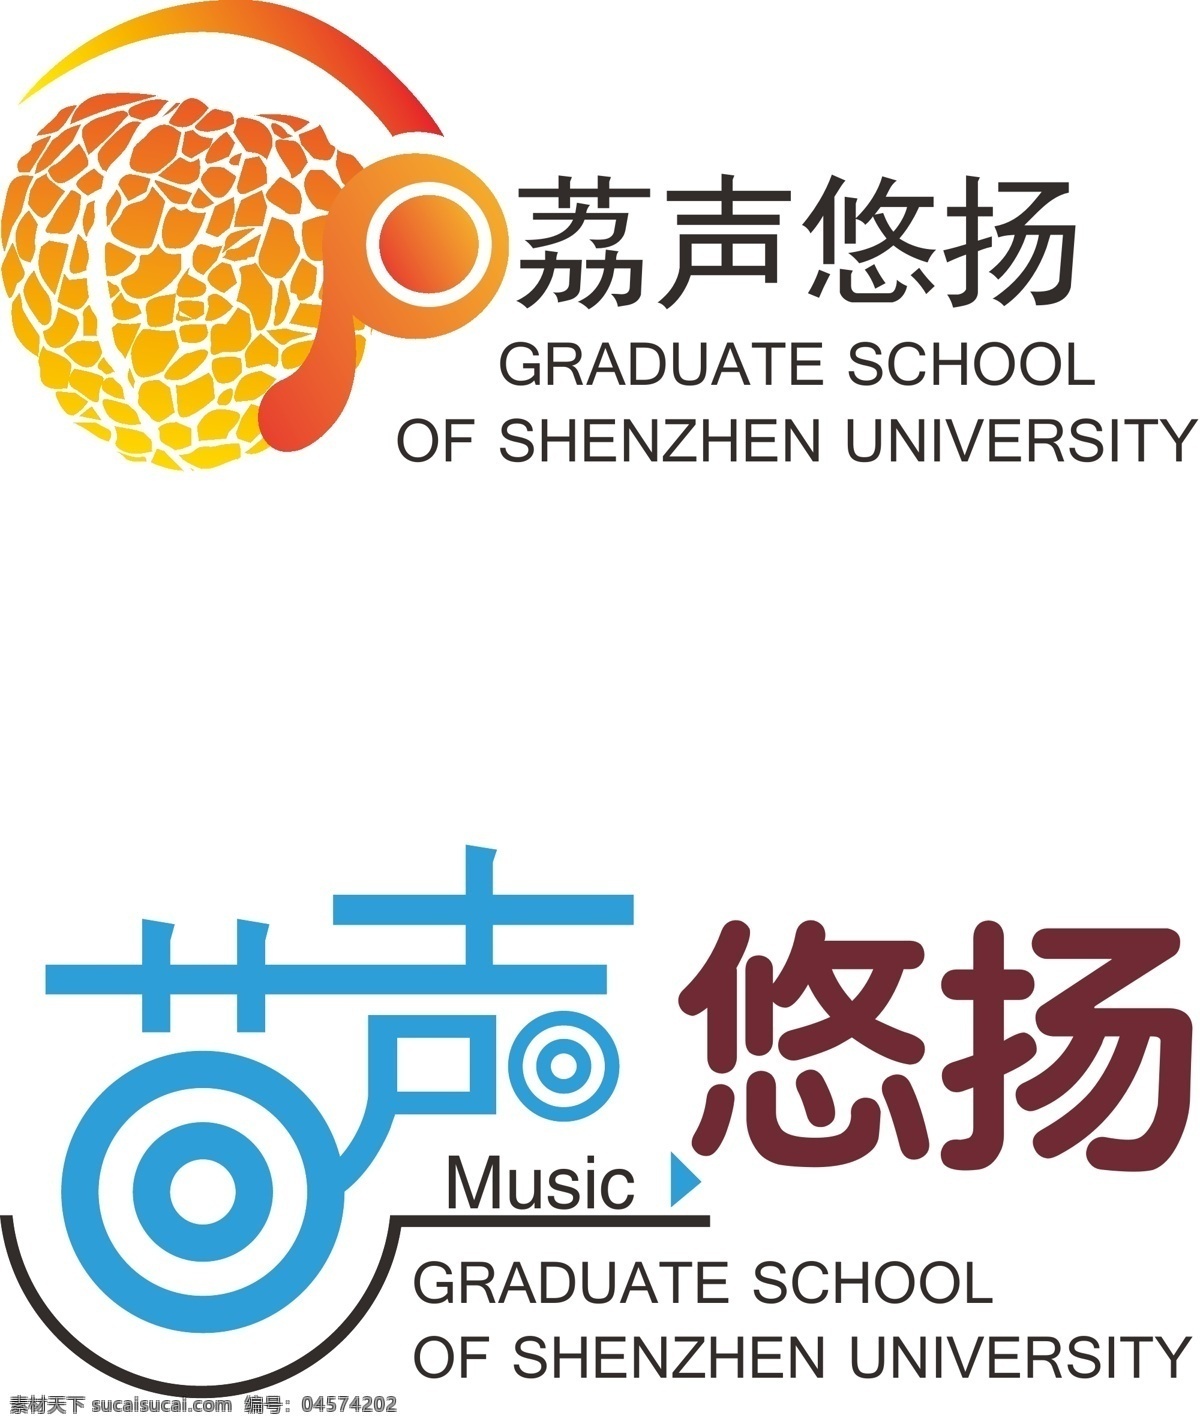 音乐 logo music 大学 荔枝 矢量图